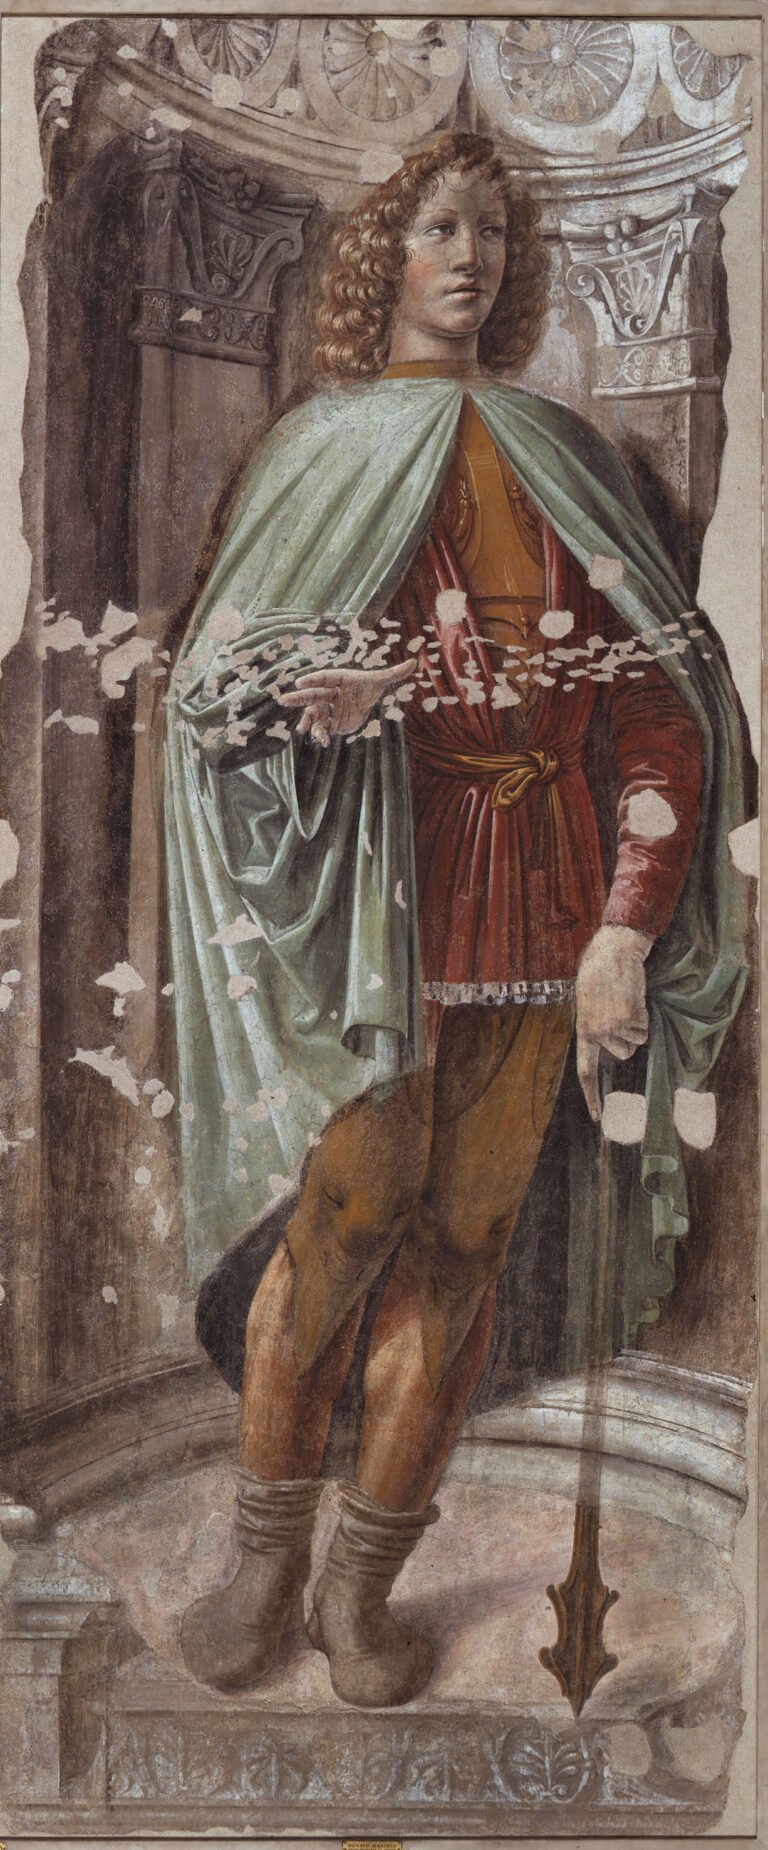 Donato Bramante Uomo dalla mazza 1487 88 Milano Pinacoteca di Brera Bramante a Milano. Le arti in Lombardia a fine Quattrocento